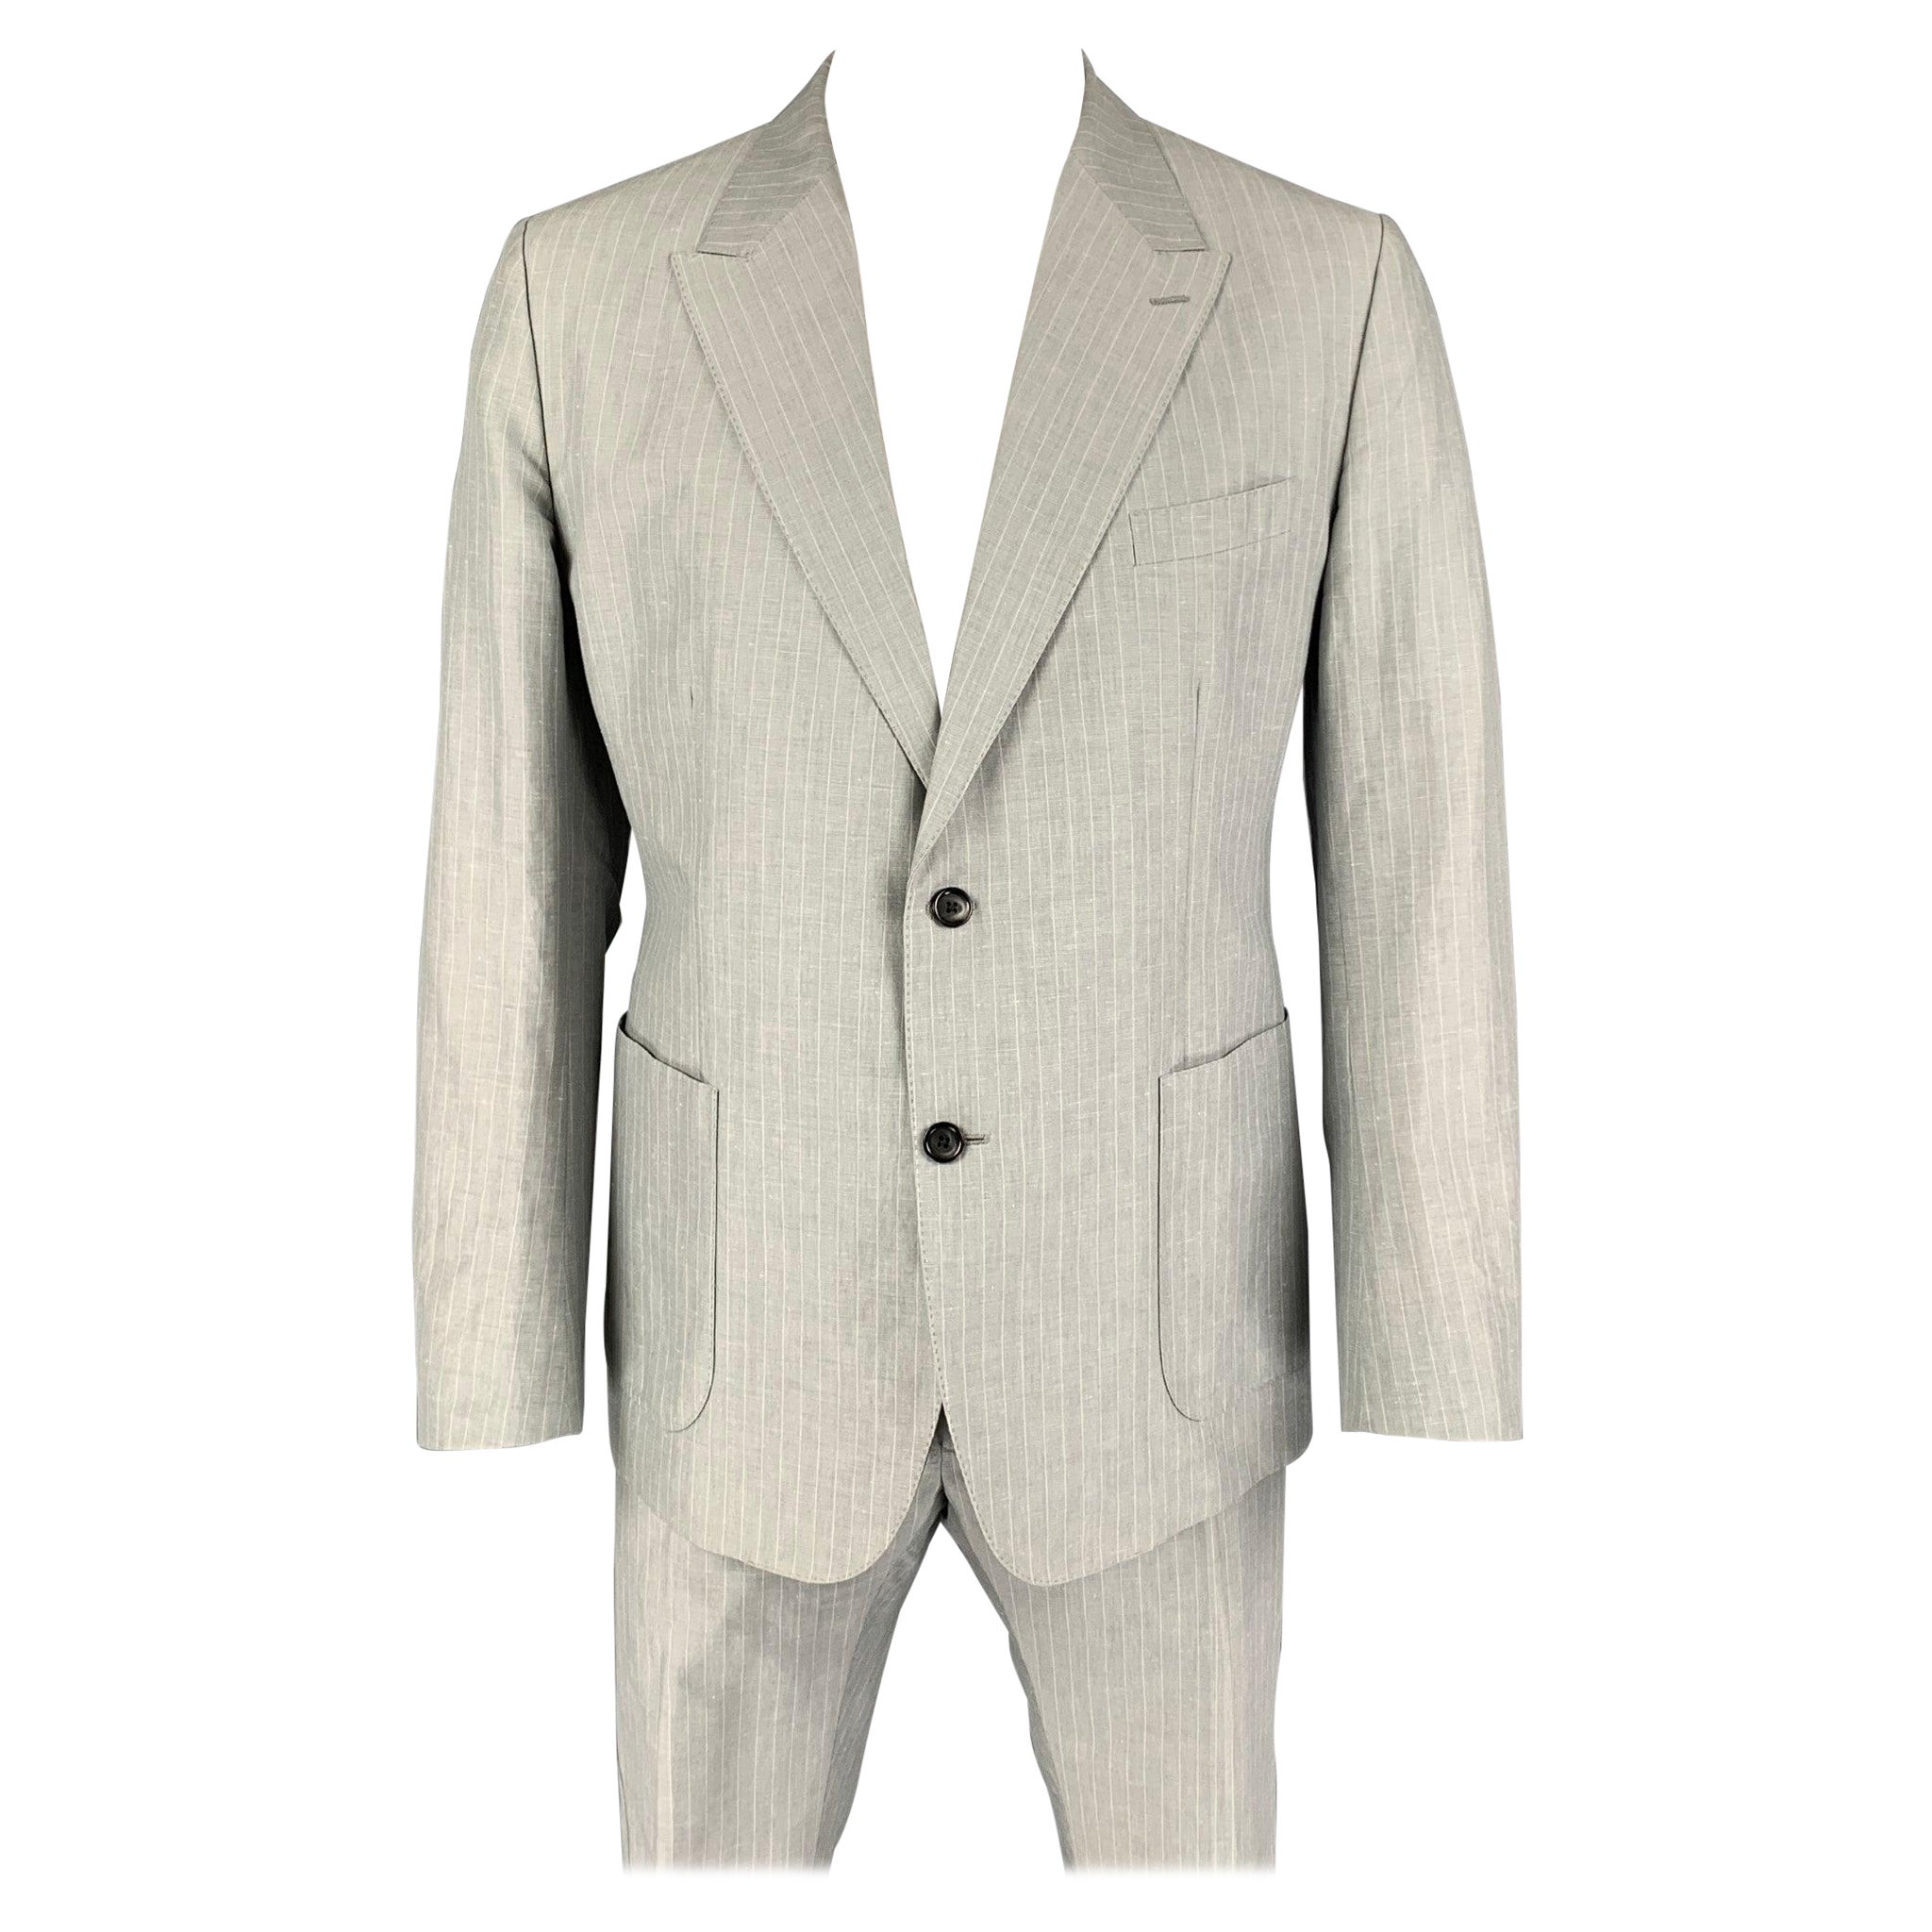 DOLCE & GABBANA Size 46 Light Gray Stripe Linen Cotton Notch Lapel Suit For Sale